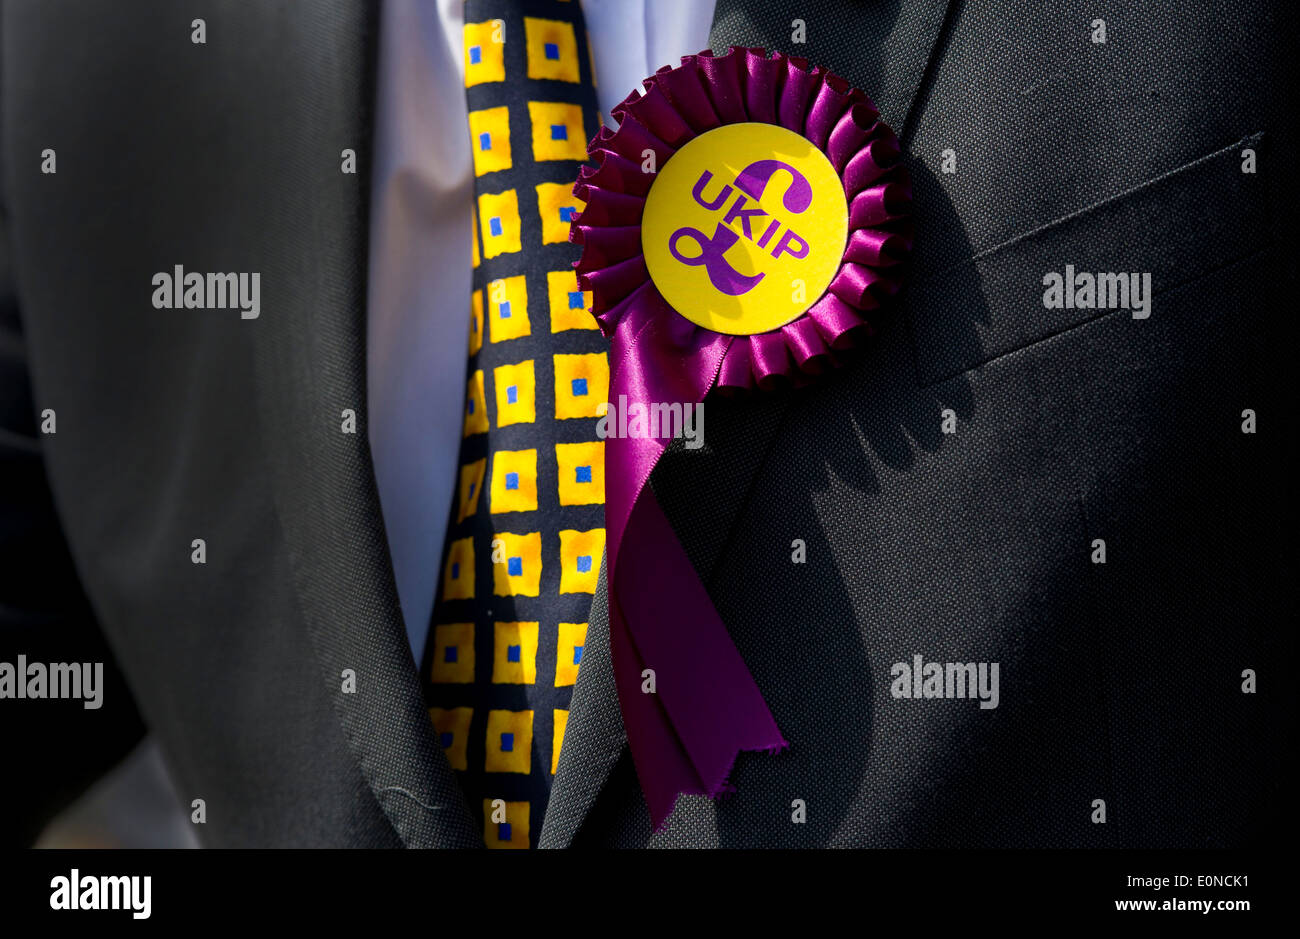 Un candidato del Partido para la Independencia del Reino Unido lleva un rosetón UKIP durante una campaña electoral en Swansea, Gales. Foto de stock